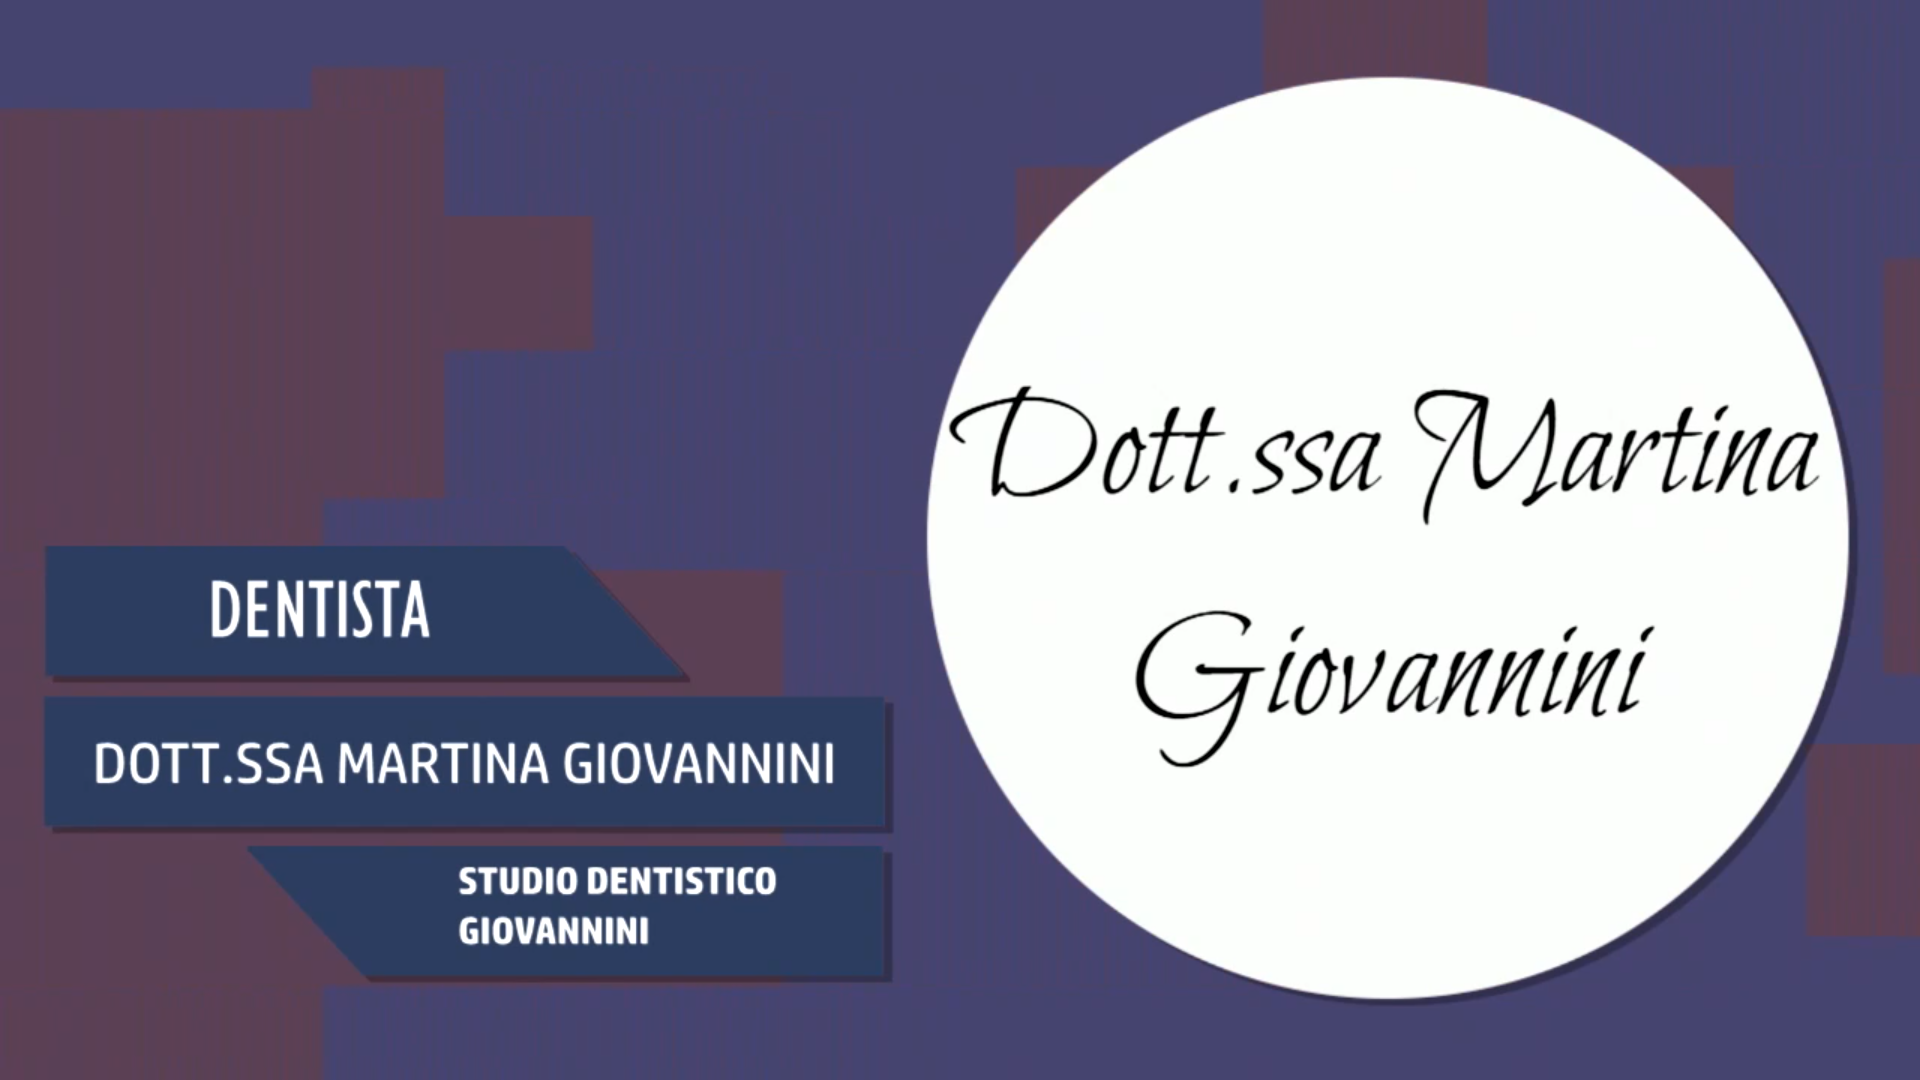 Intervista alla Dott.ssa Martina Giovannini – Studio dentistico Giovannini